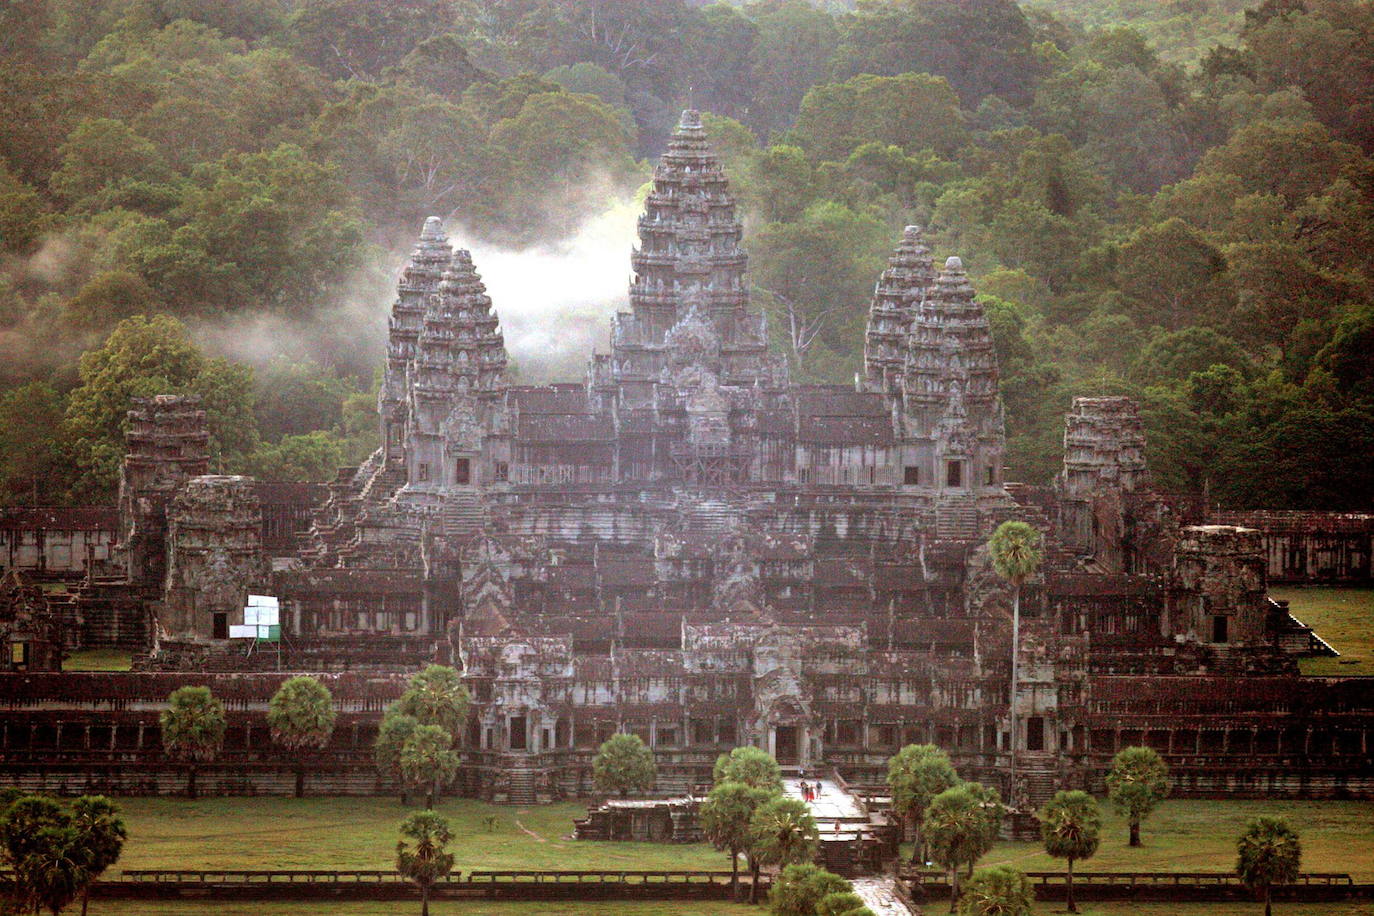 Los templos de Angkor Wat, en la región de Camboya, son considerados como el mayor complejo arqueológico del sureste asiático, permanecieron desconocidos al mundo occidental hasta mediados del siglo XX. El territorio fue, en el siglo primero de nuestra era, el exótico país Jemer. La tradición estipulaba que cada rey debía erigir un nuevo templo a Shiva (el dios destructor) o a Vishnu (el guardian) según le perteneciera, y que a su muerte le serviría de tumba. Así empezaron las edificaciones religiosas a los dioses hindúes, concebidas como una representación simbólica del universo. Su abandono sigue siendo uno de los misterios que envuelven estas reliquias. 